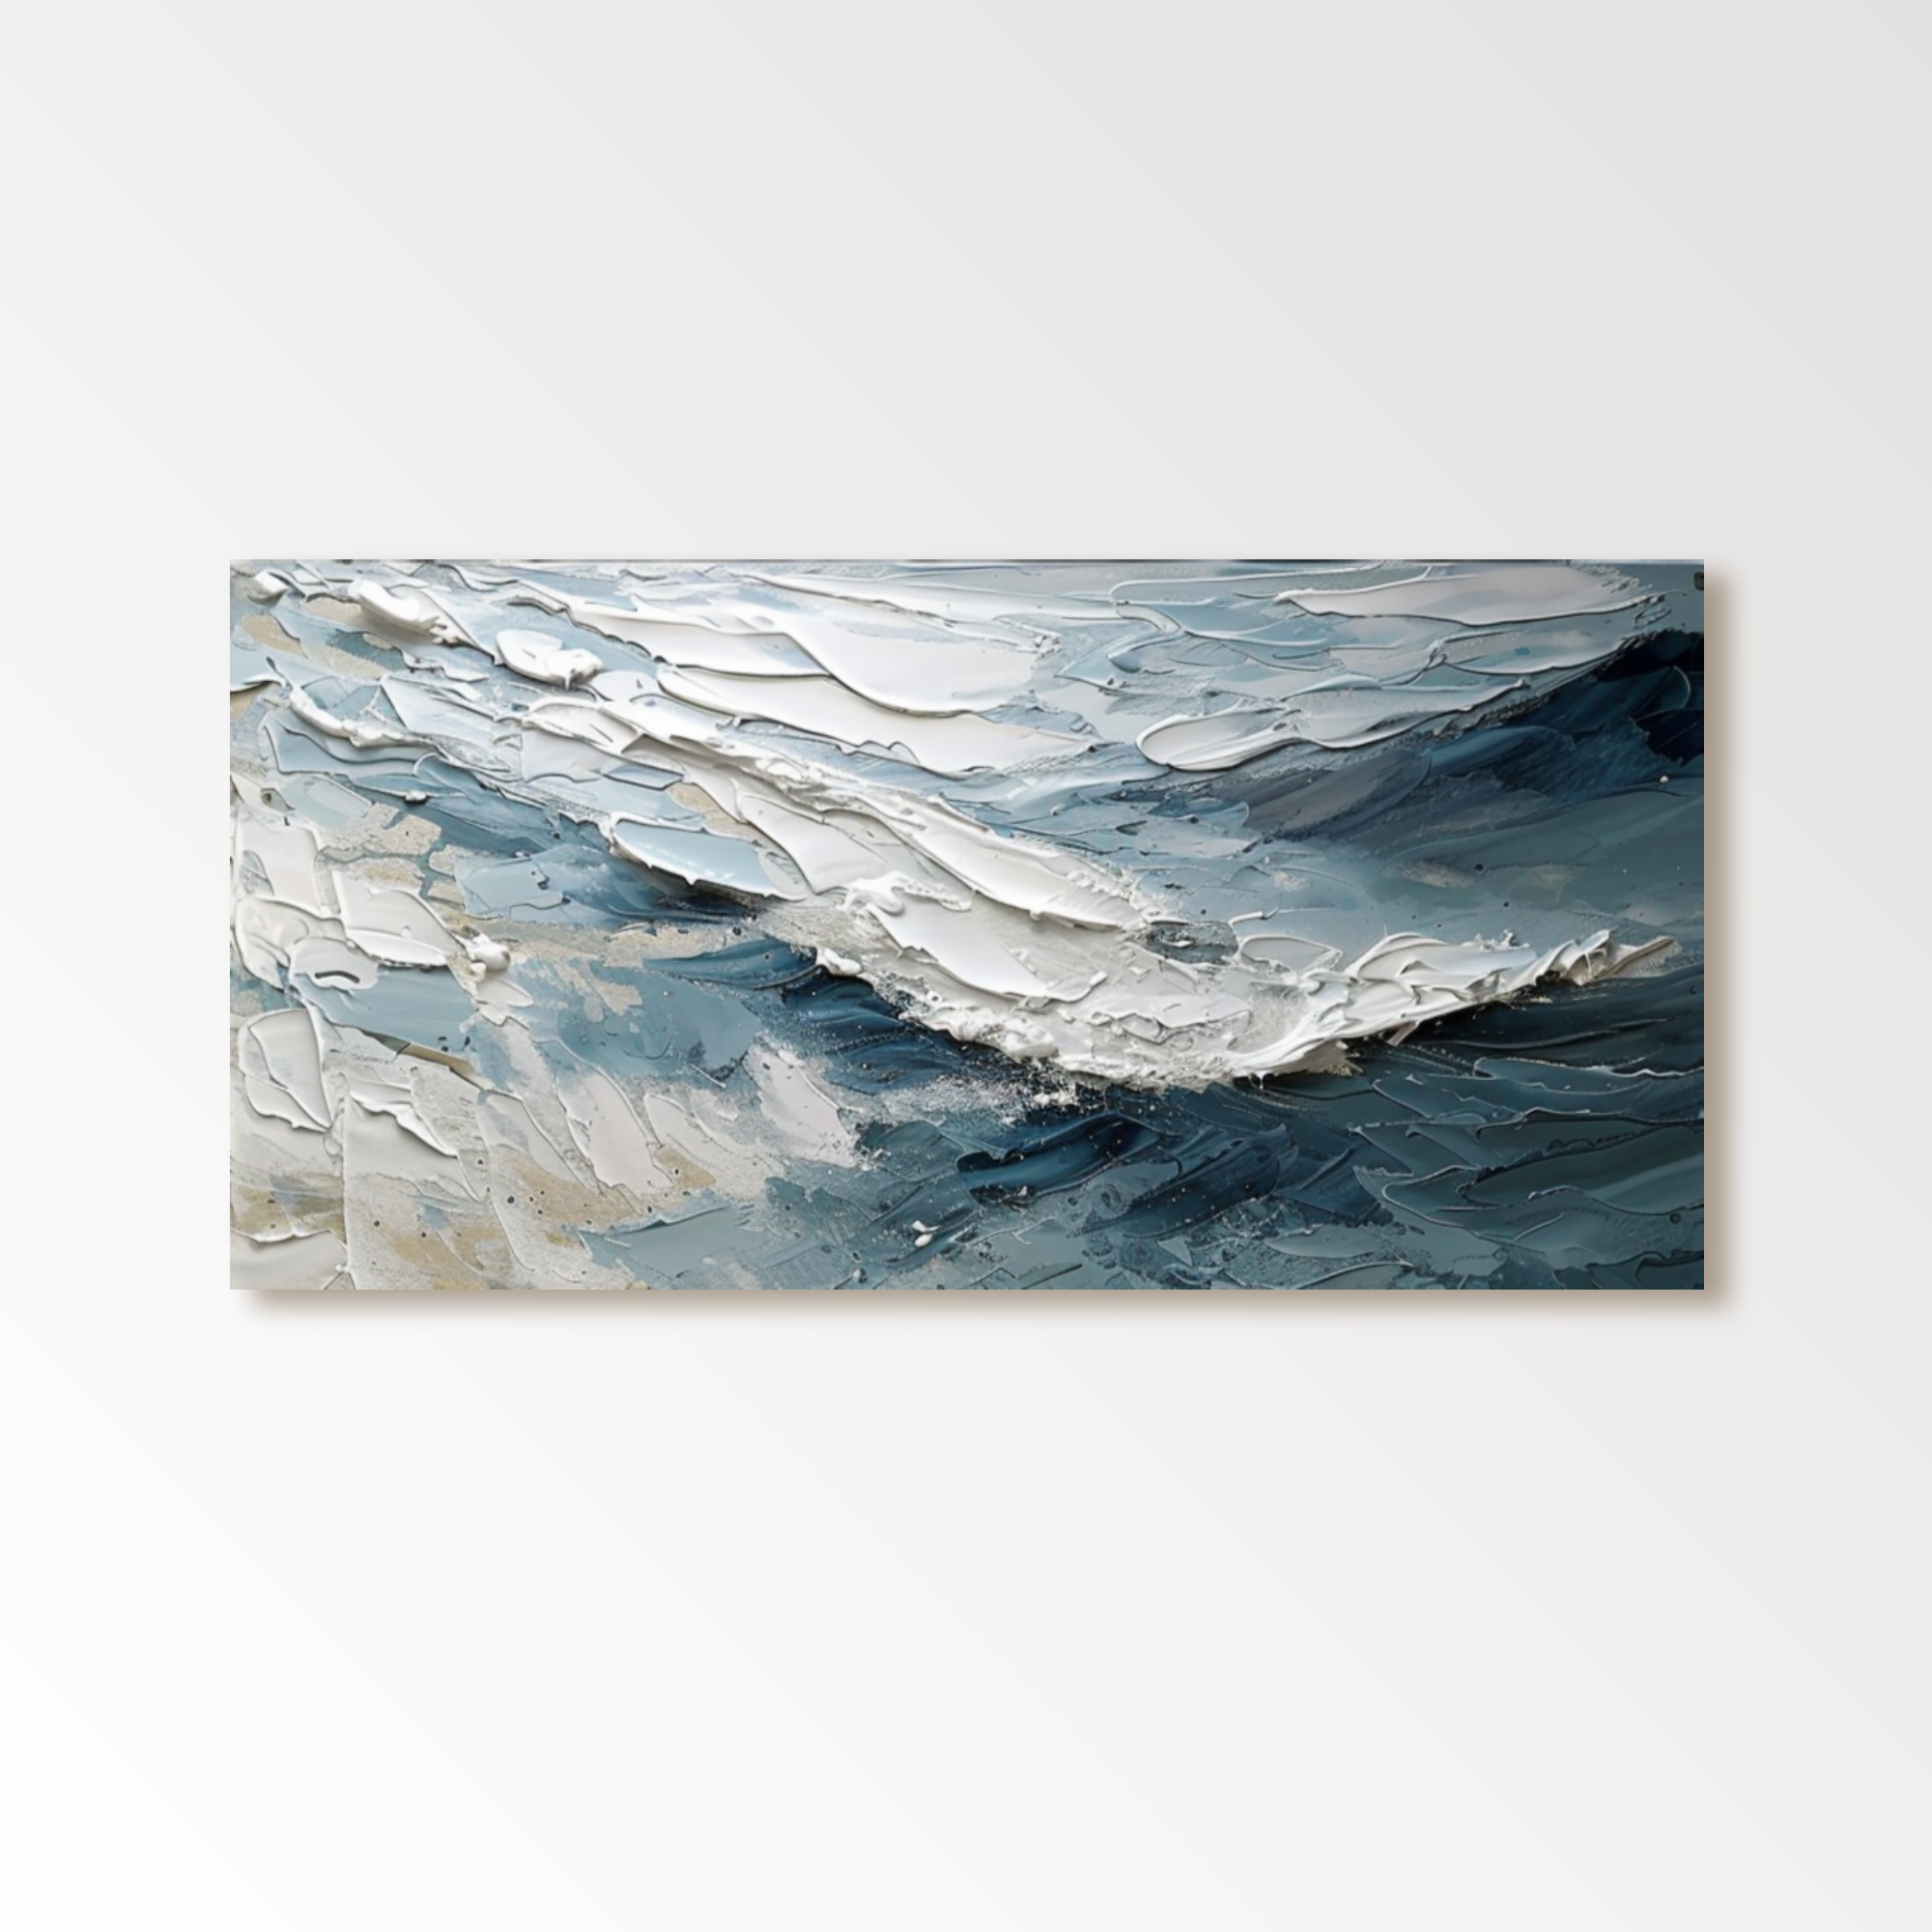 Plaster Painting "Ocean's Whisper"